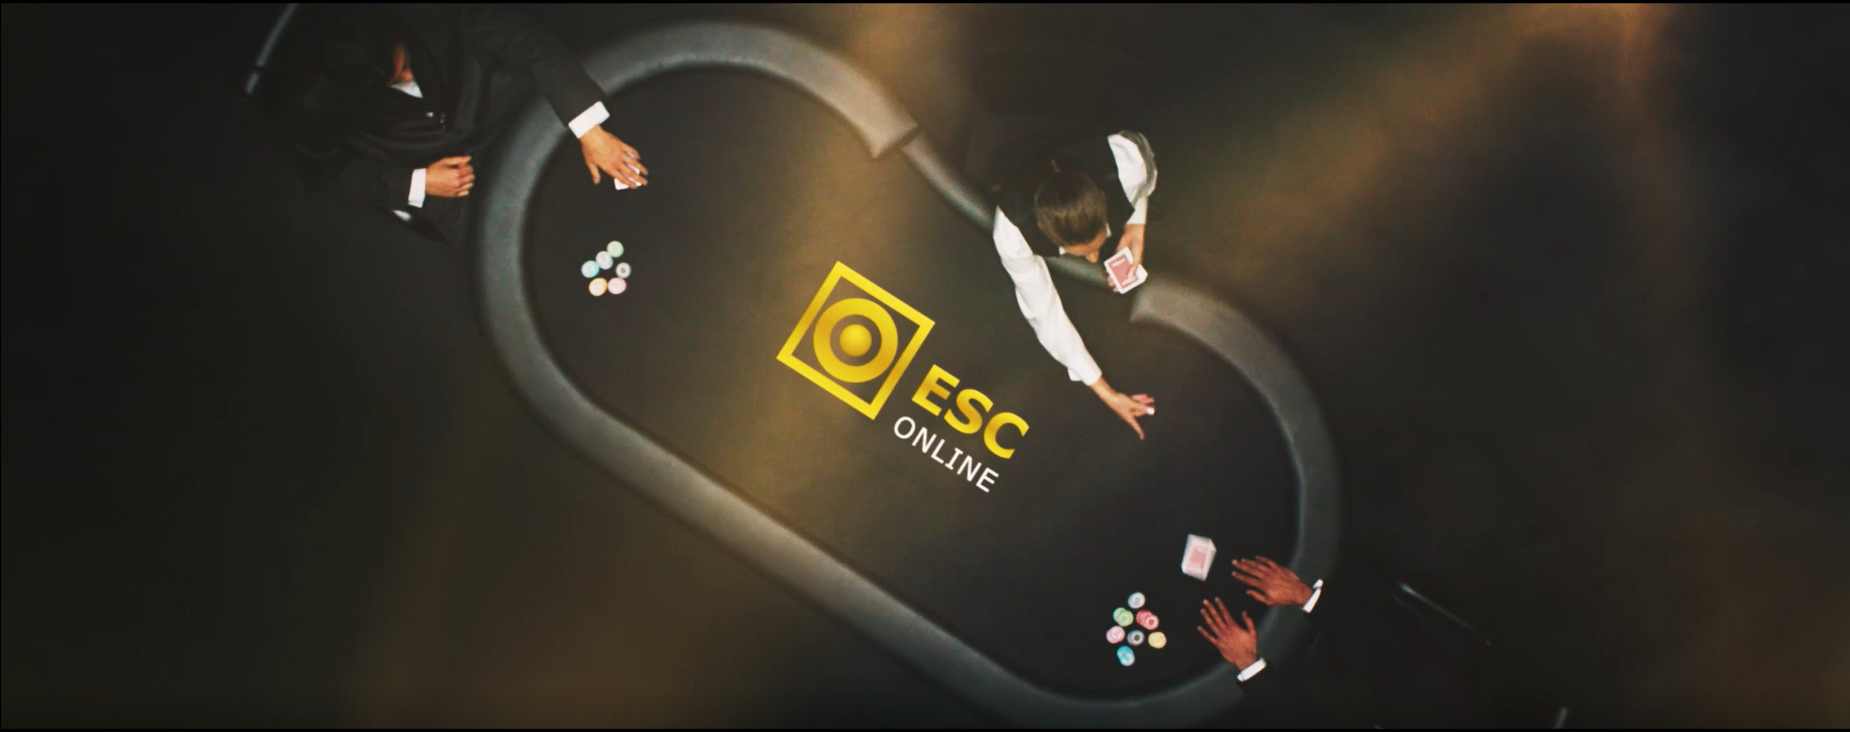 GAMING1 lança marco histórico de Poker com ESC Online e AconcaguaPoker